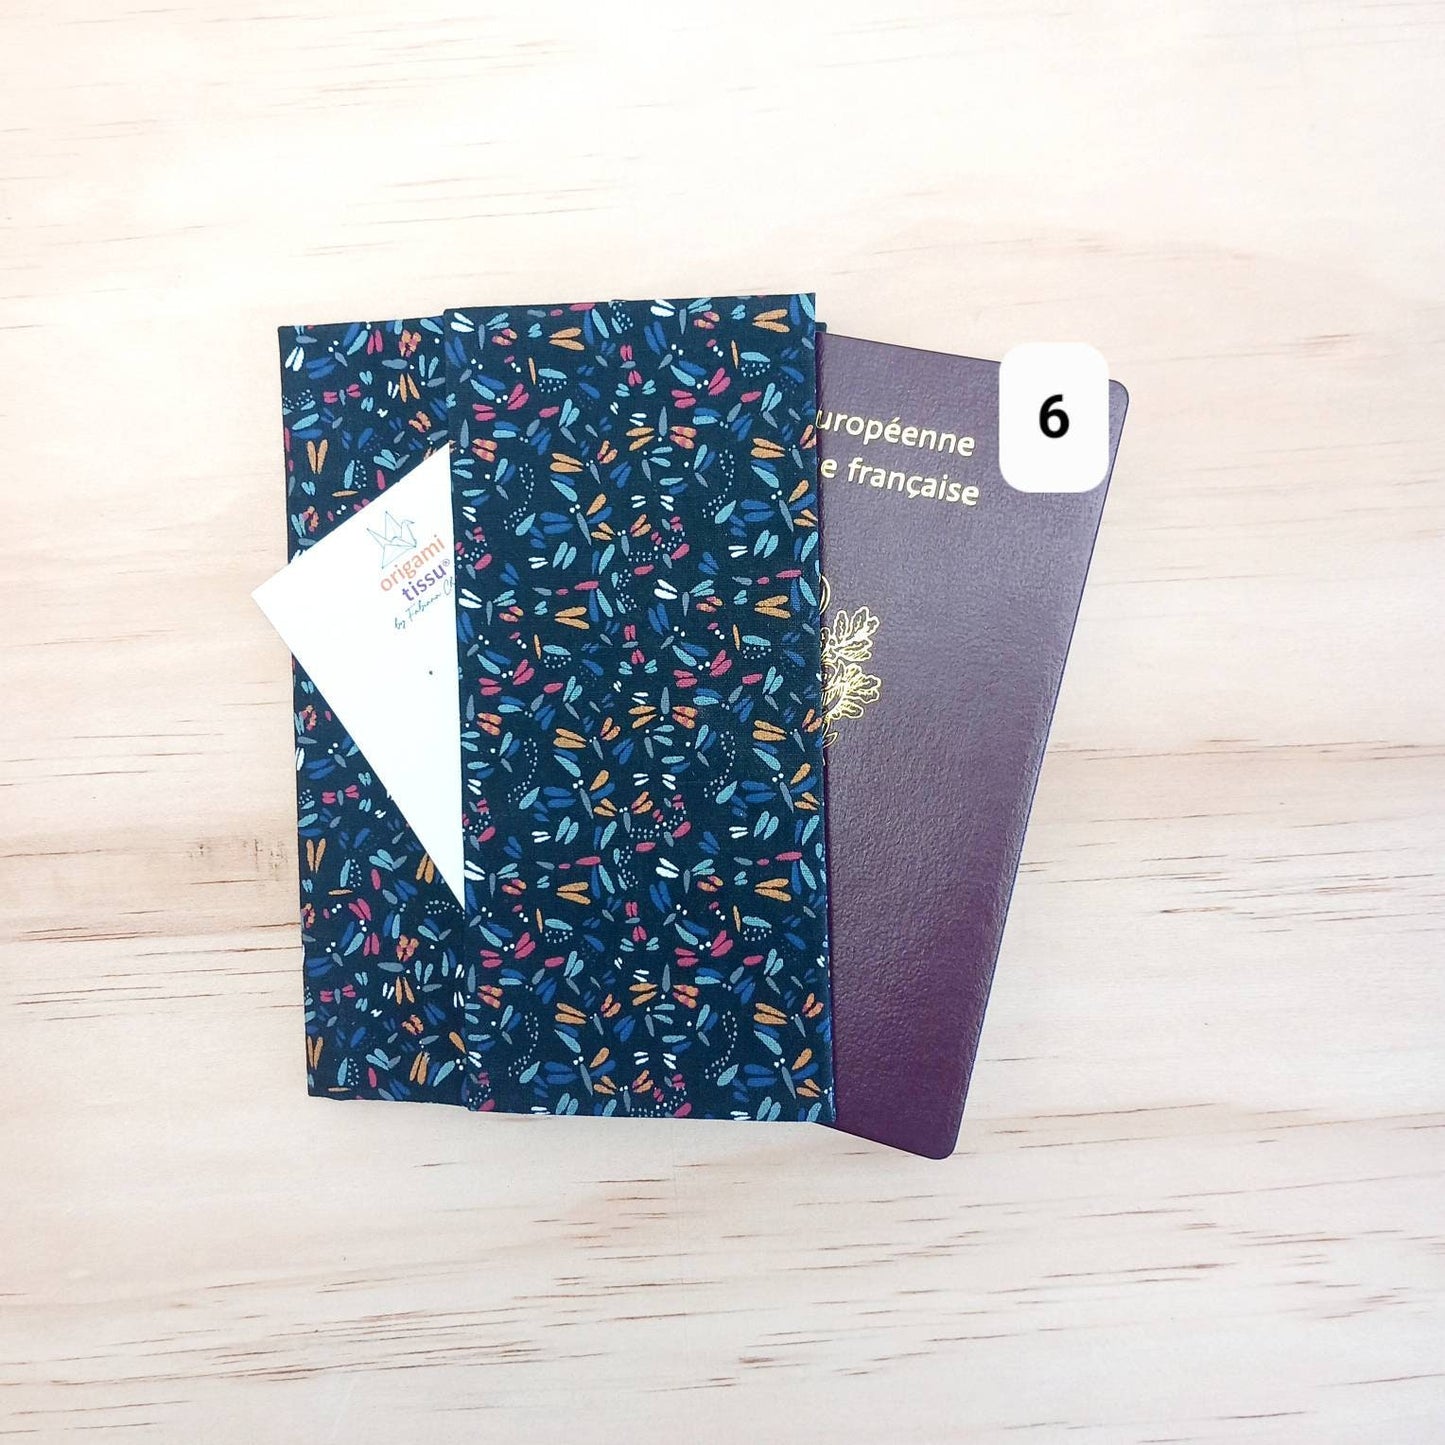 Protège-passeport, pochette porte-passeport, étui pour passeport, cadeau pour voyageur, portefeuille de voyage - cadeau St Valentin